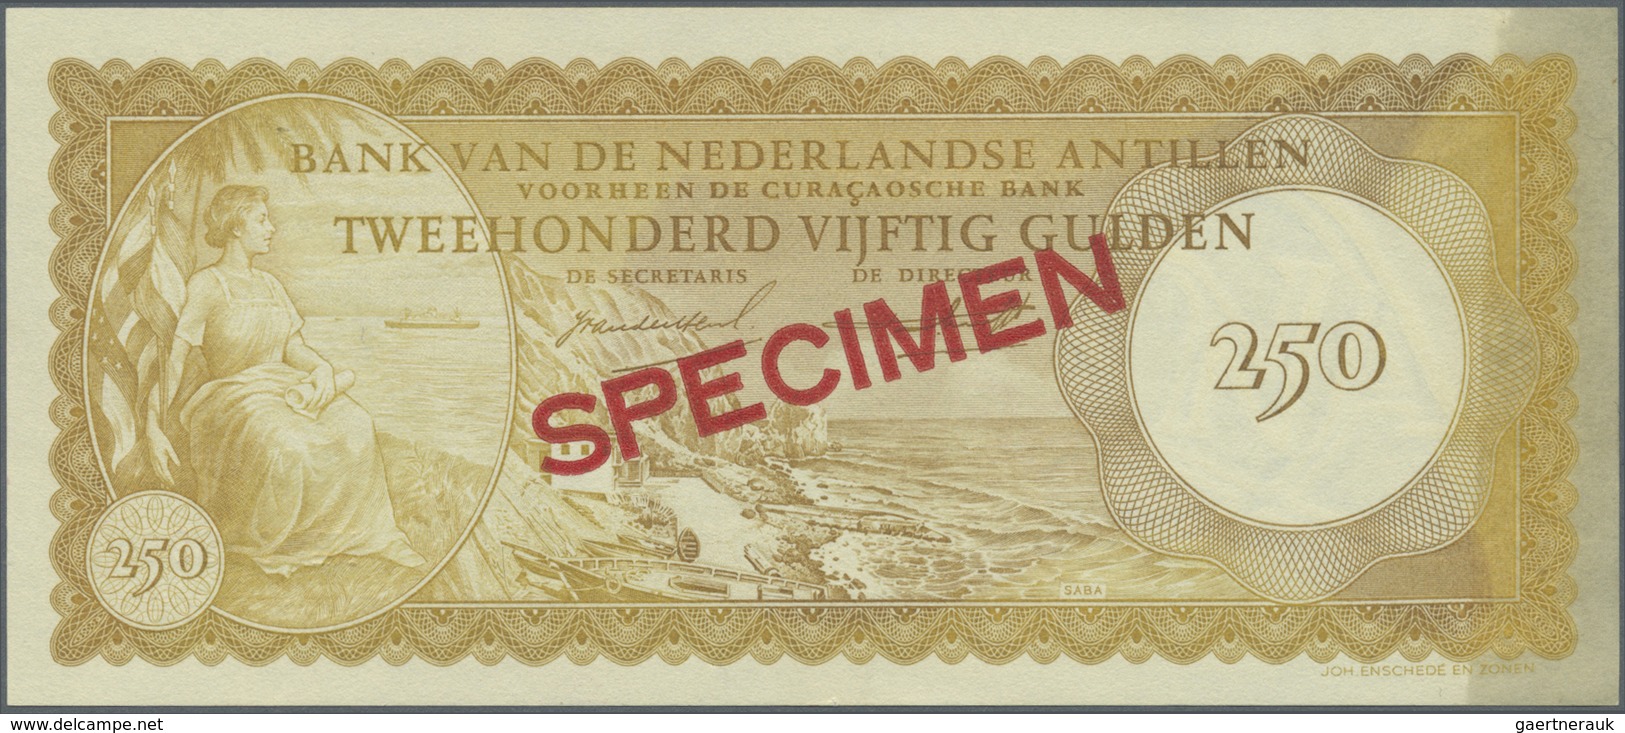 Netherlands Antilles / Niederländische Antillen: 250 Gulden 1962 Specimen P. 6s With 012345 Serial N - Netherlands Antilles (...-1986)